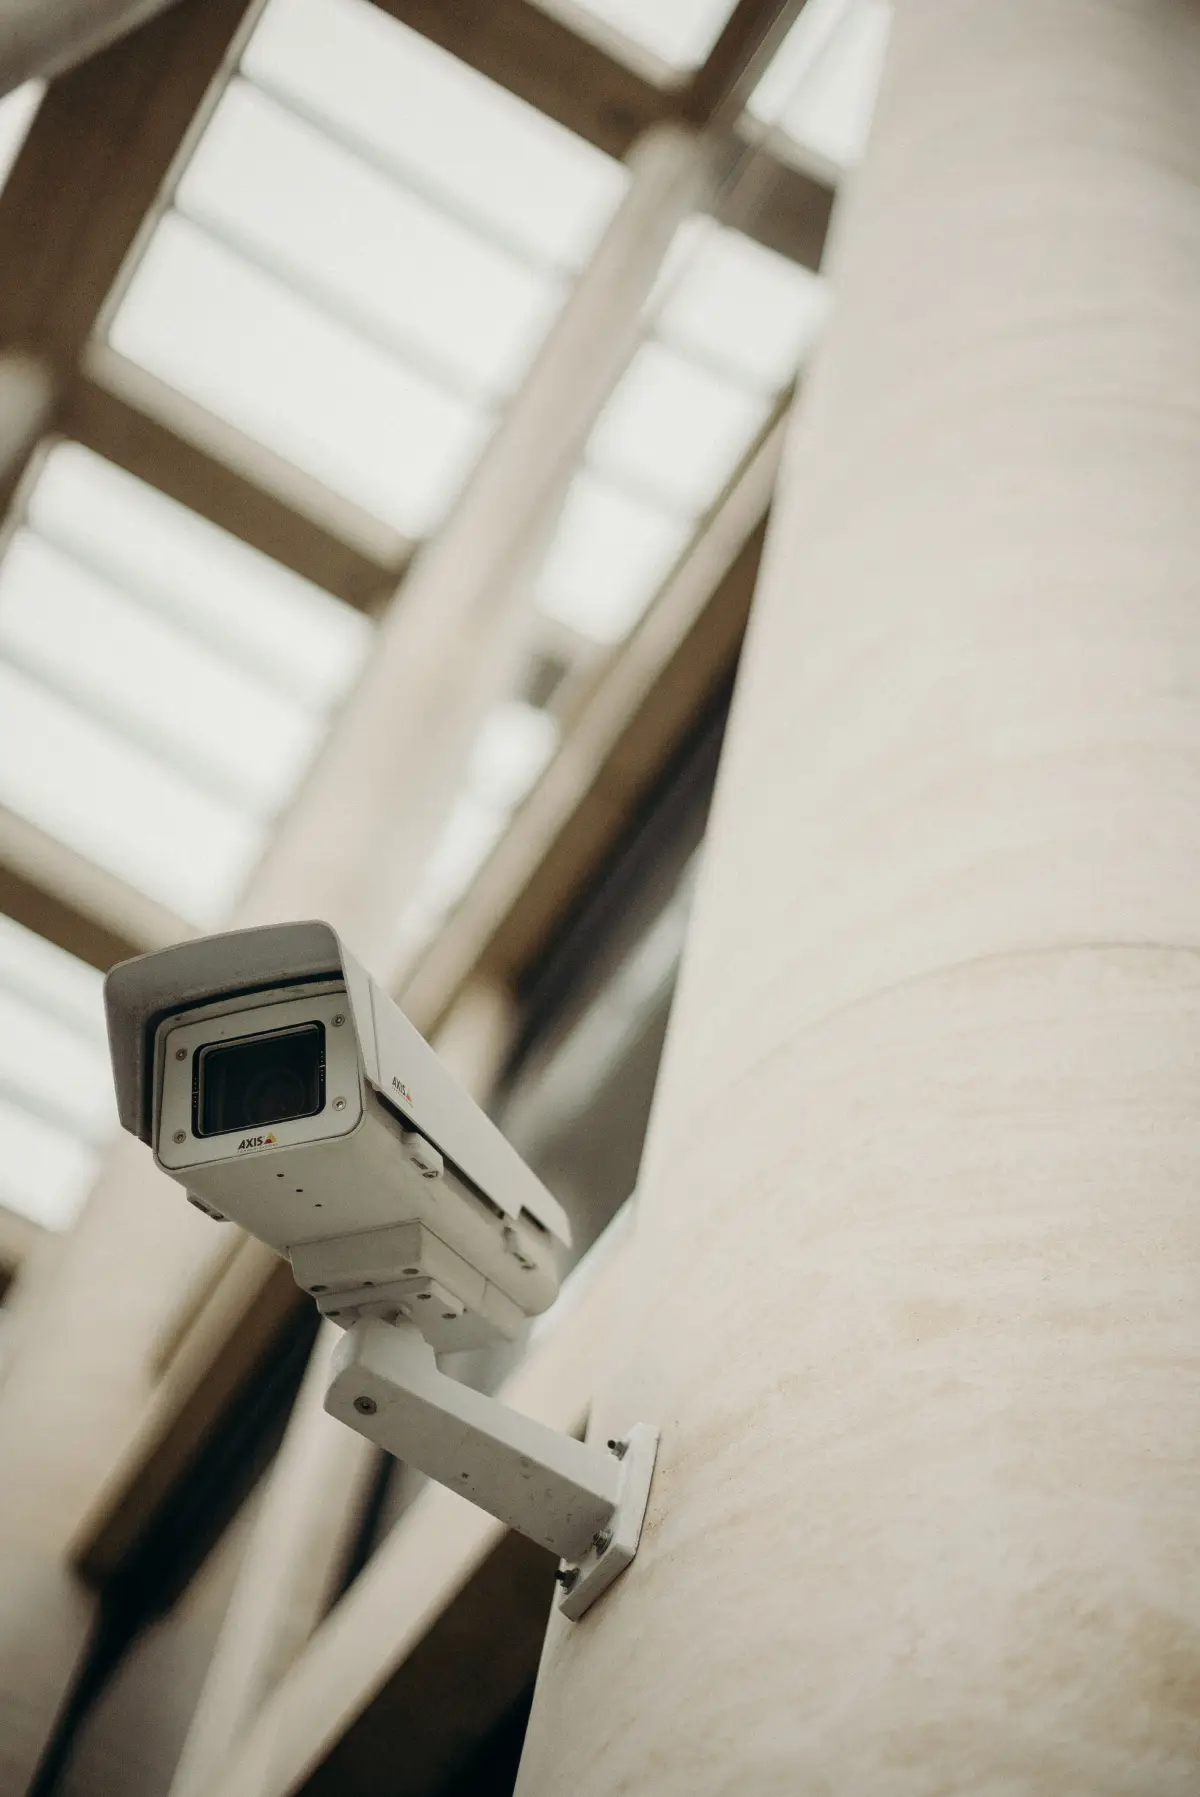 Cómo colocar una cámara de vigilancia en casa y dónde ponerla